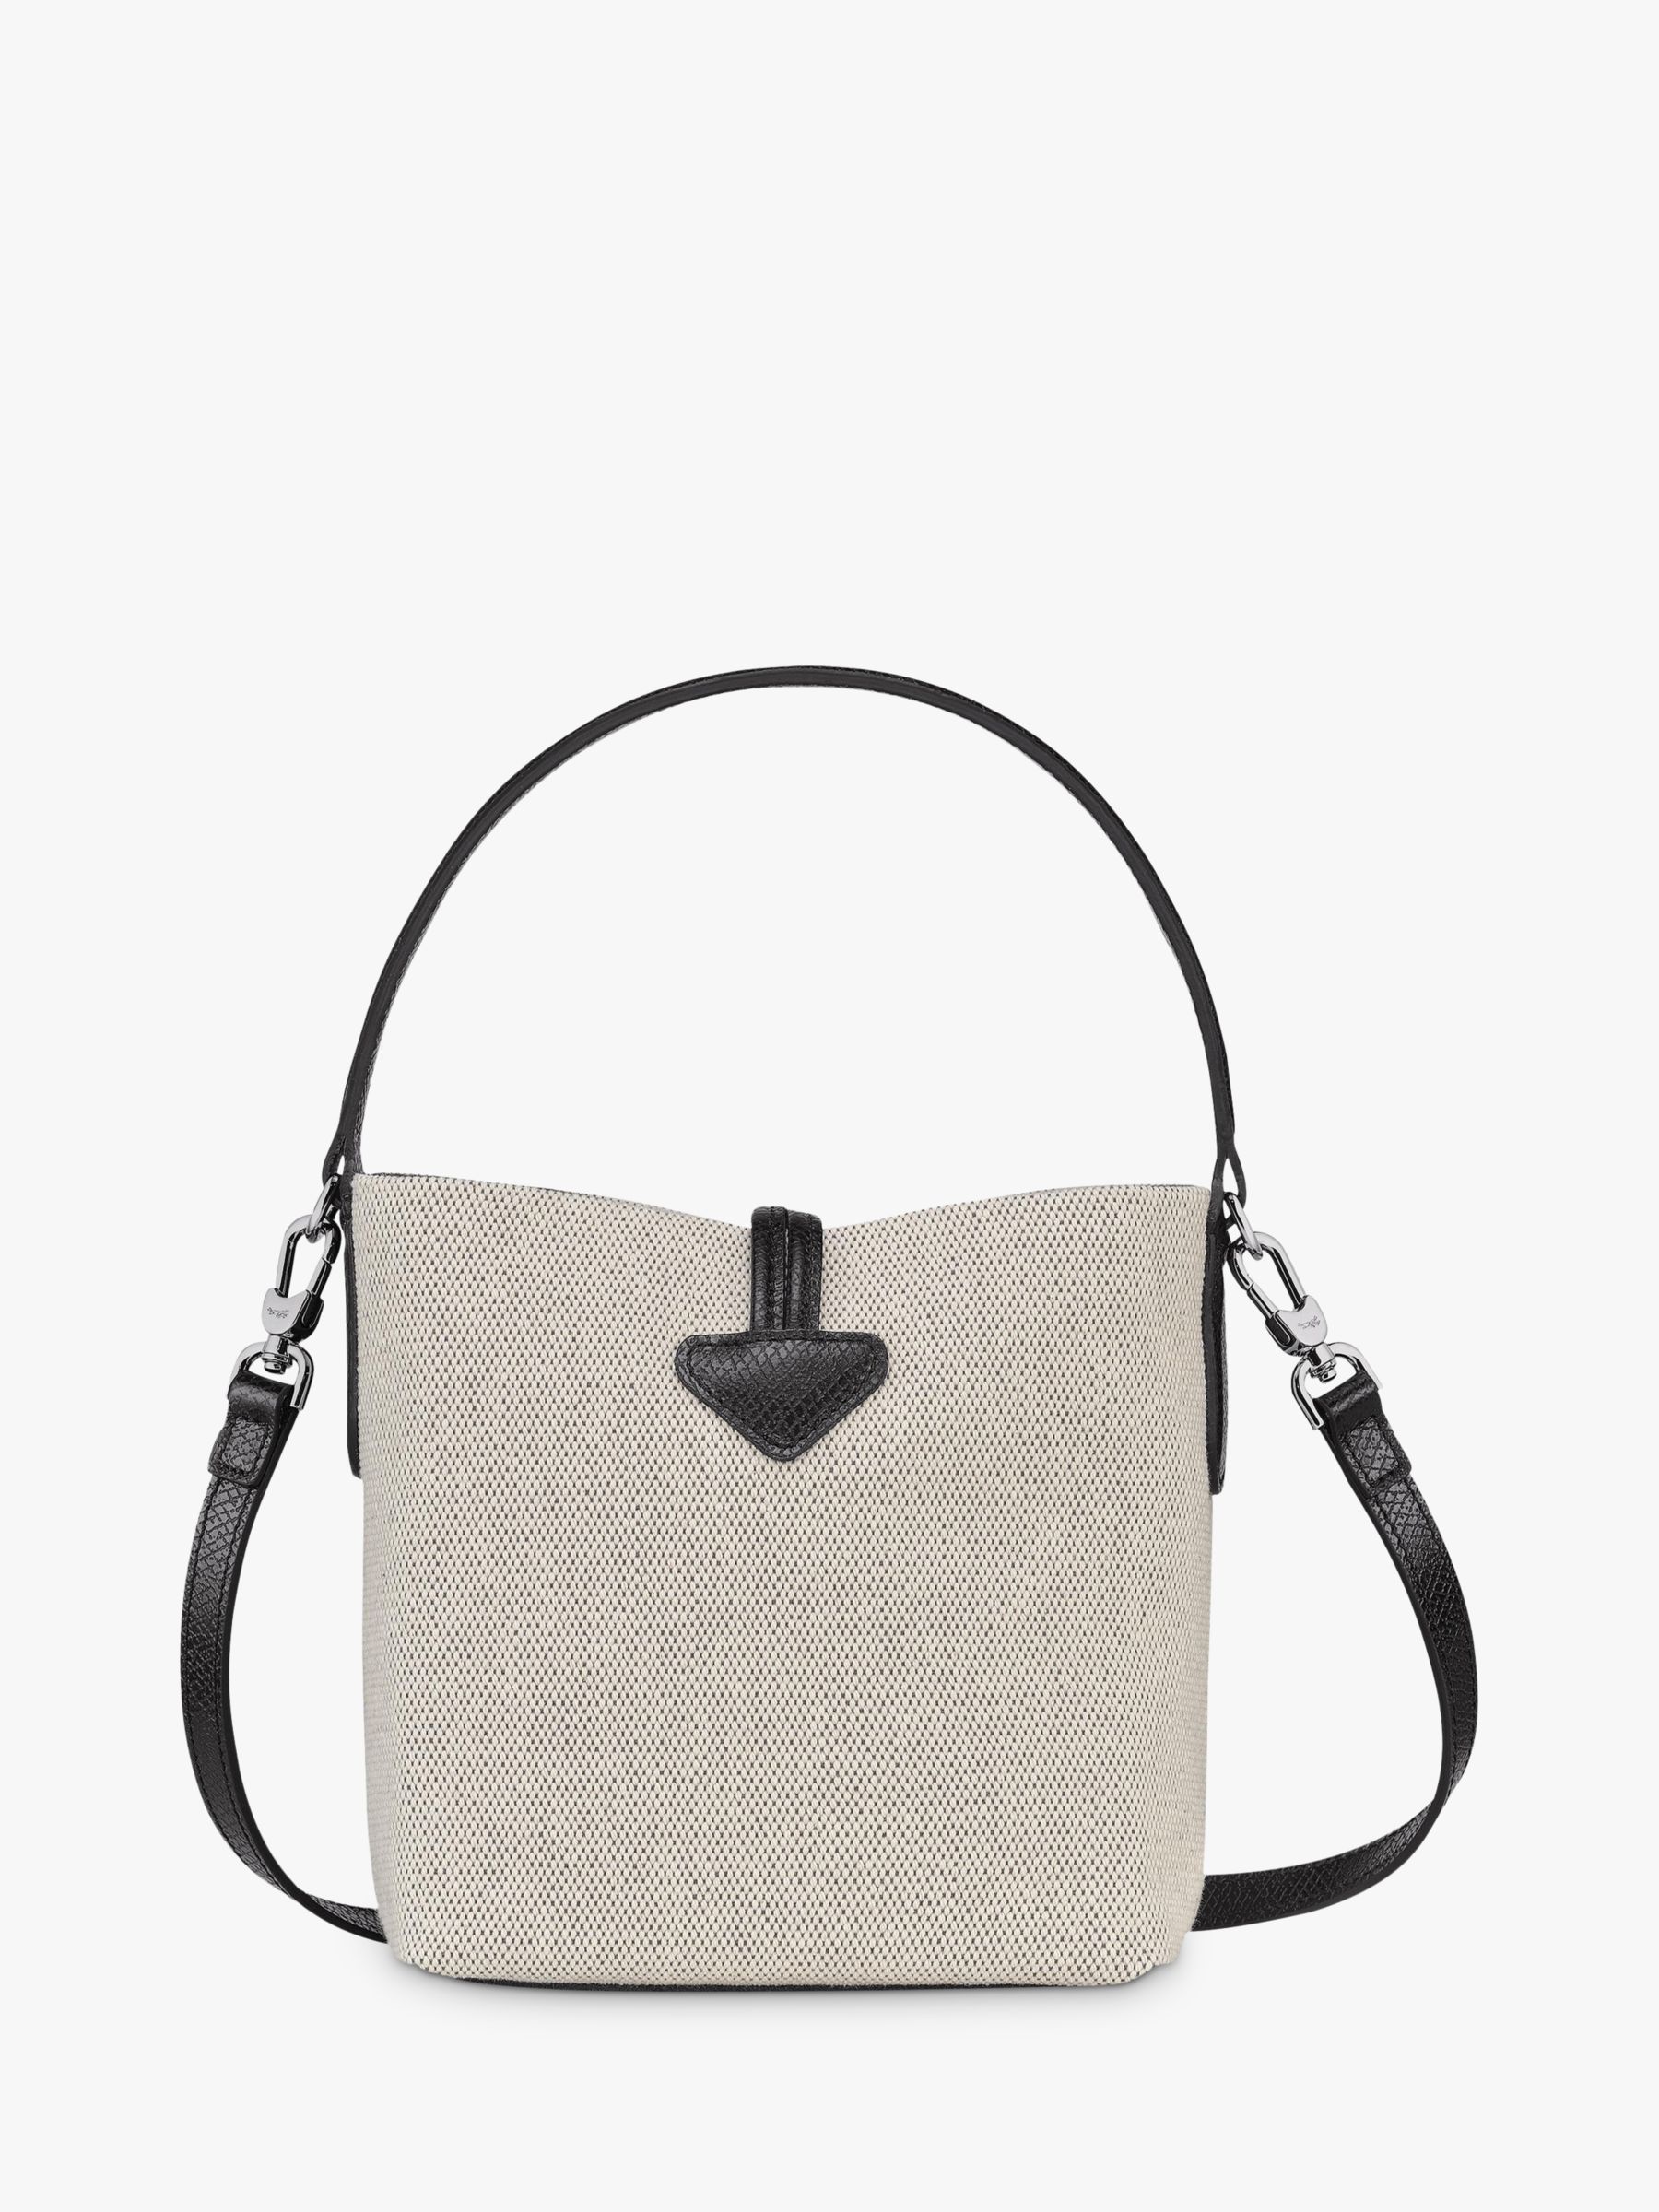 Longchamp Small Roseau Essential Bucket Bag - Farfetch